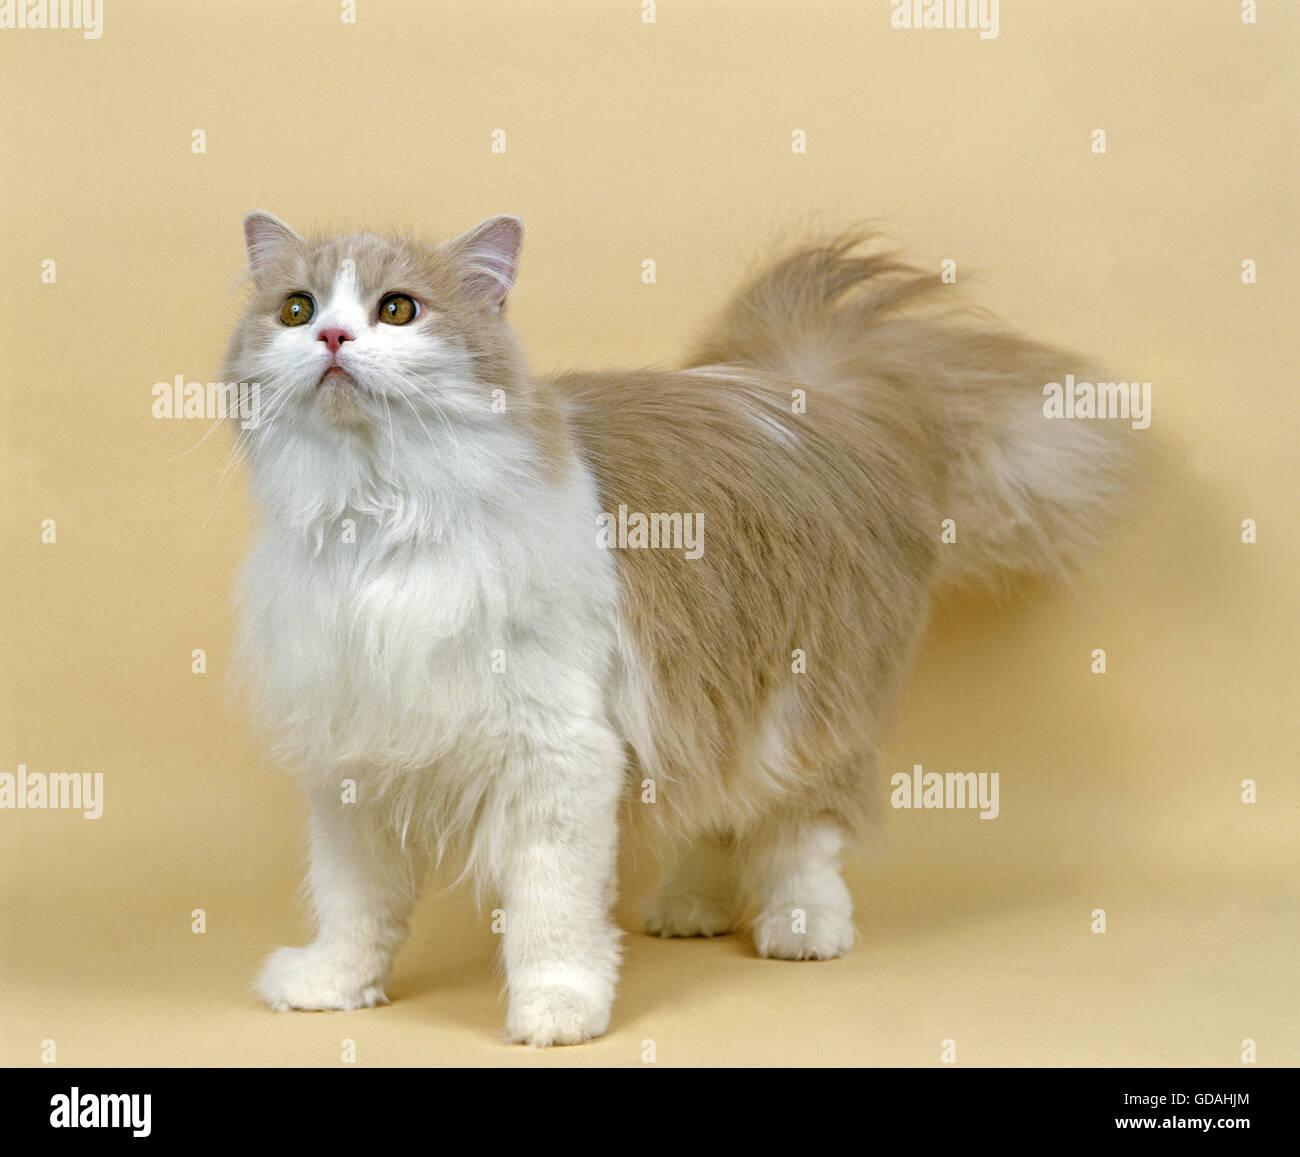 Cream and White Persian Domestic Cat Stock Photo